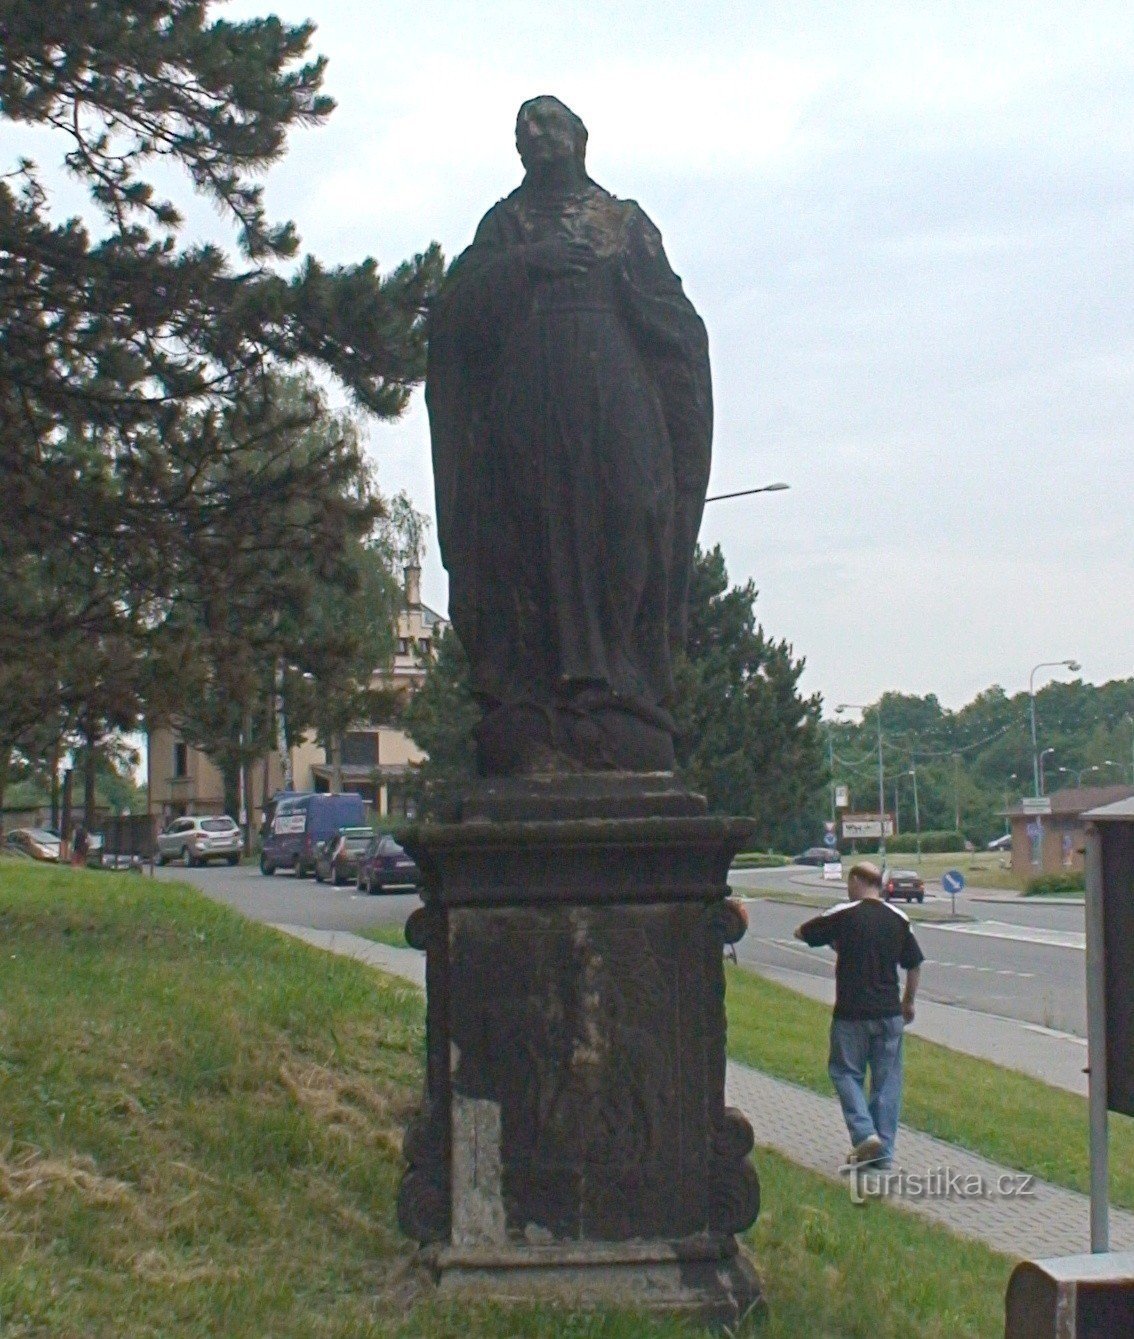 ペツヴァルト像